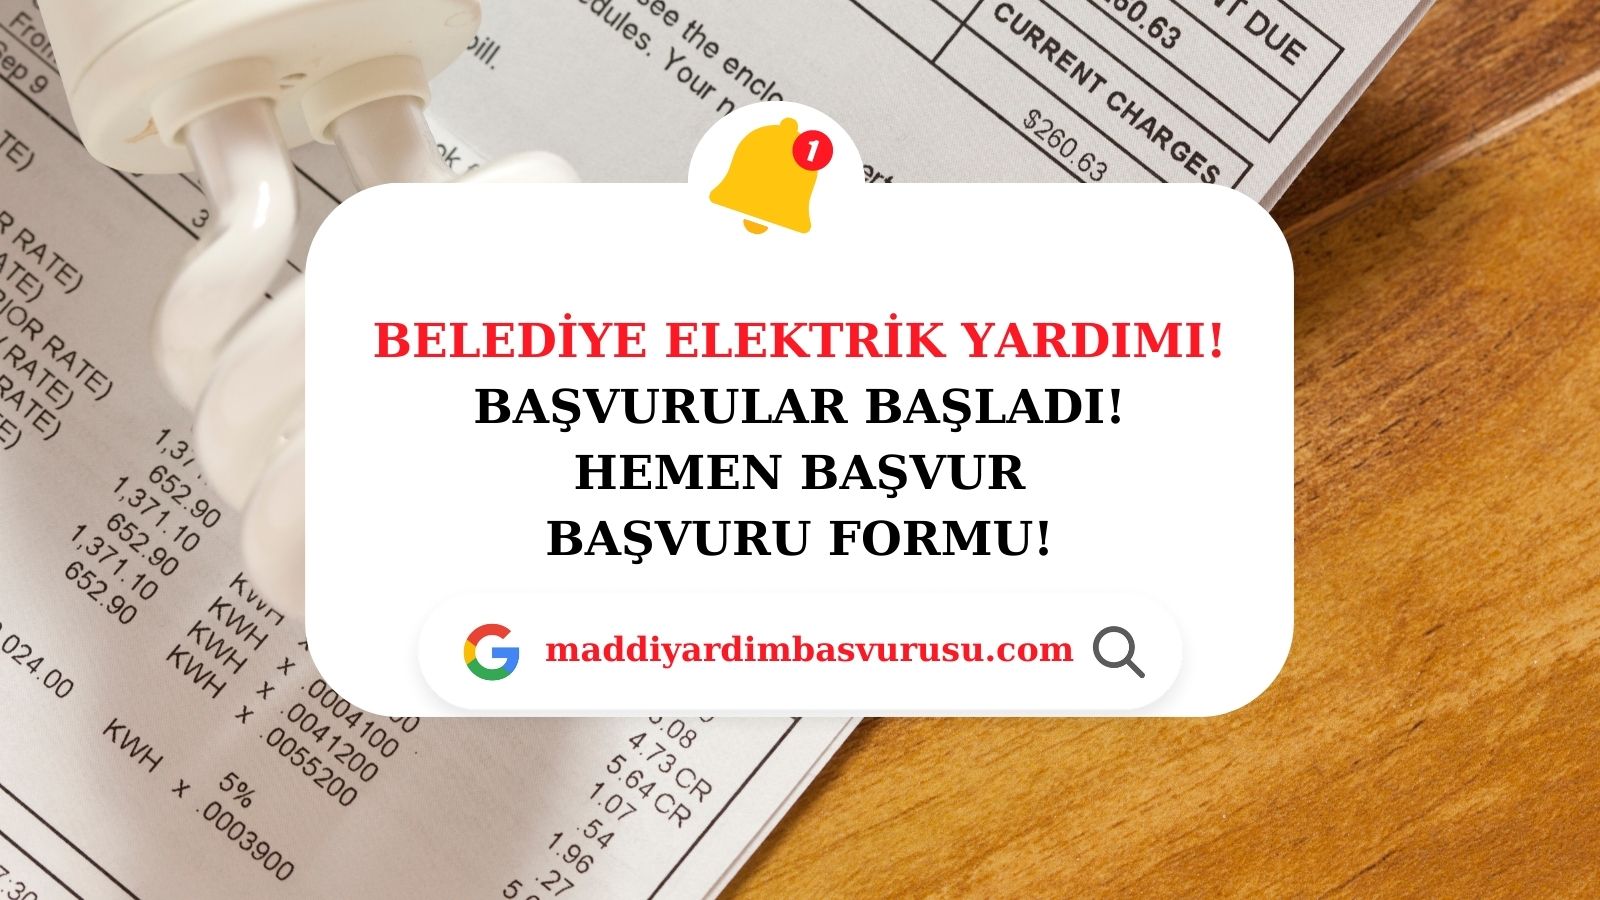 Bursa Belediyesi Elektrik Yardım Başvurusu